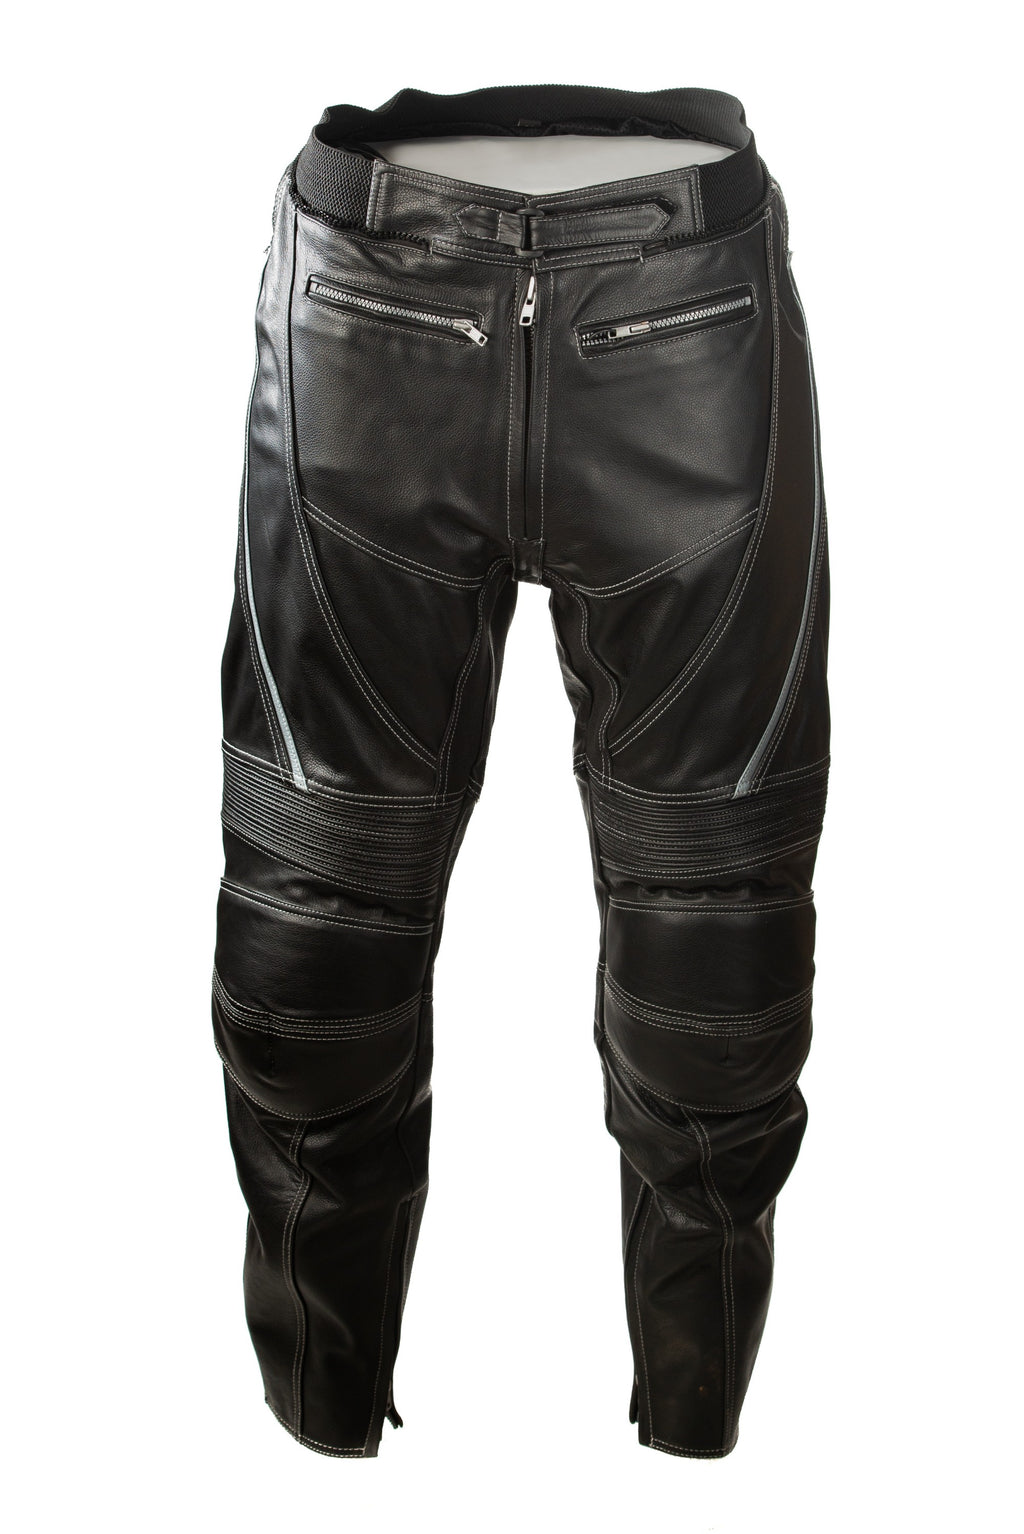 Men motorbike trousers FINE cordura CE armor 1  Model Sports Works